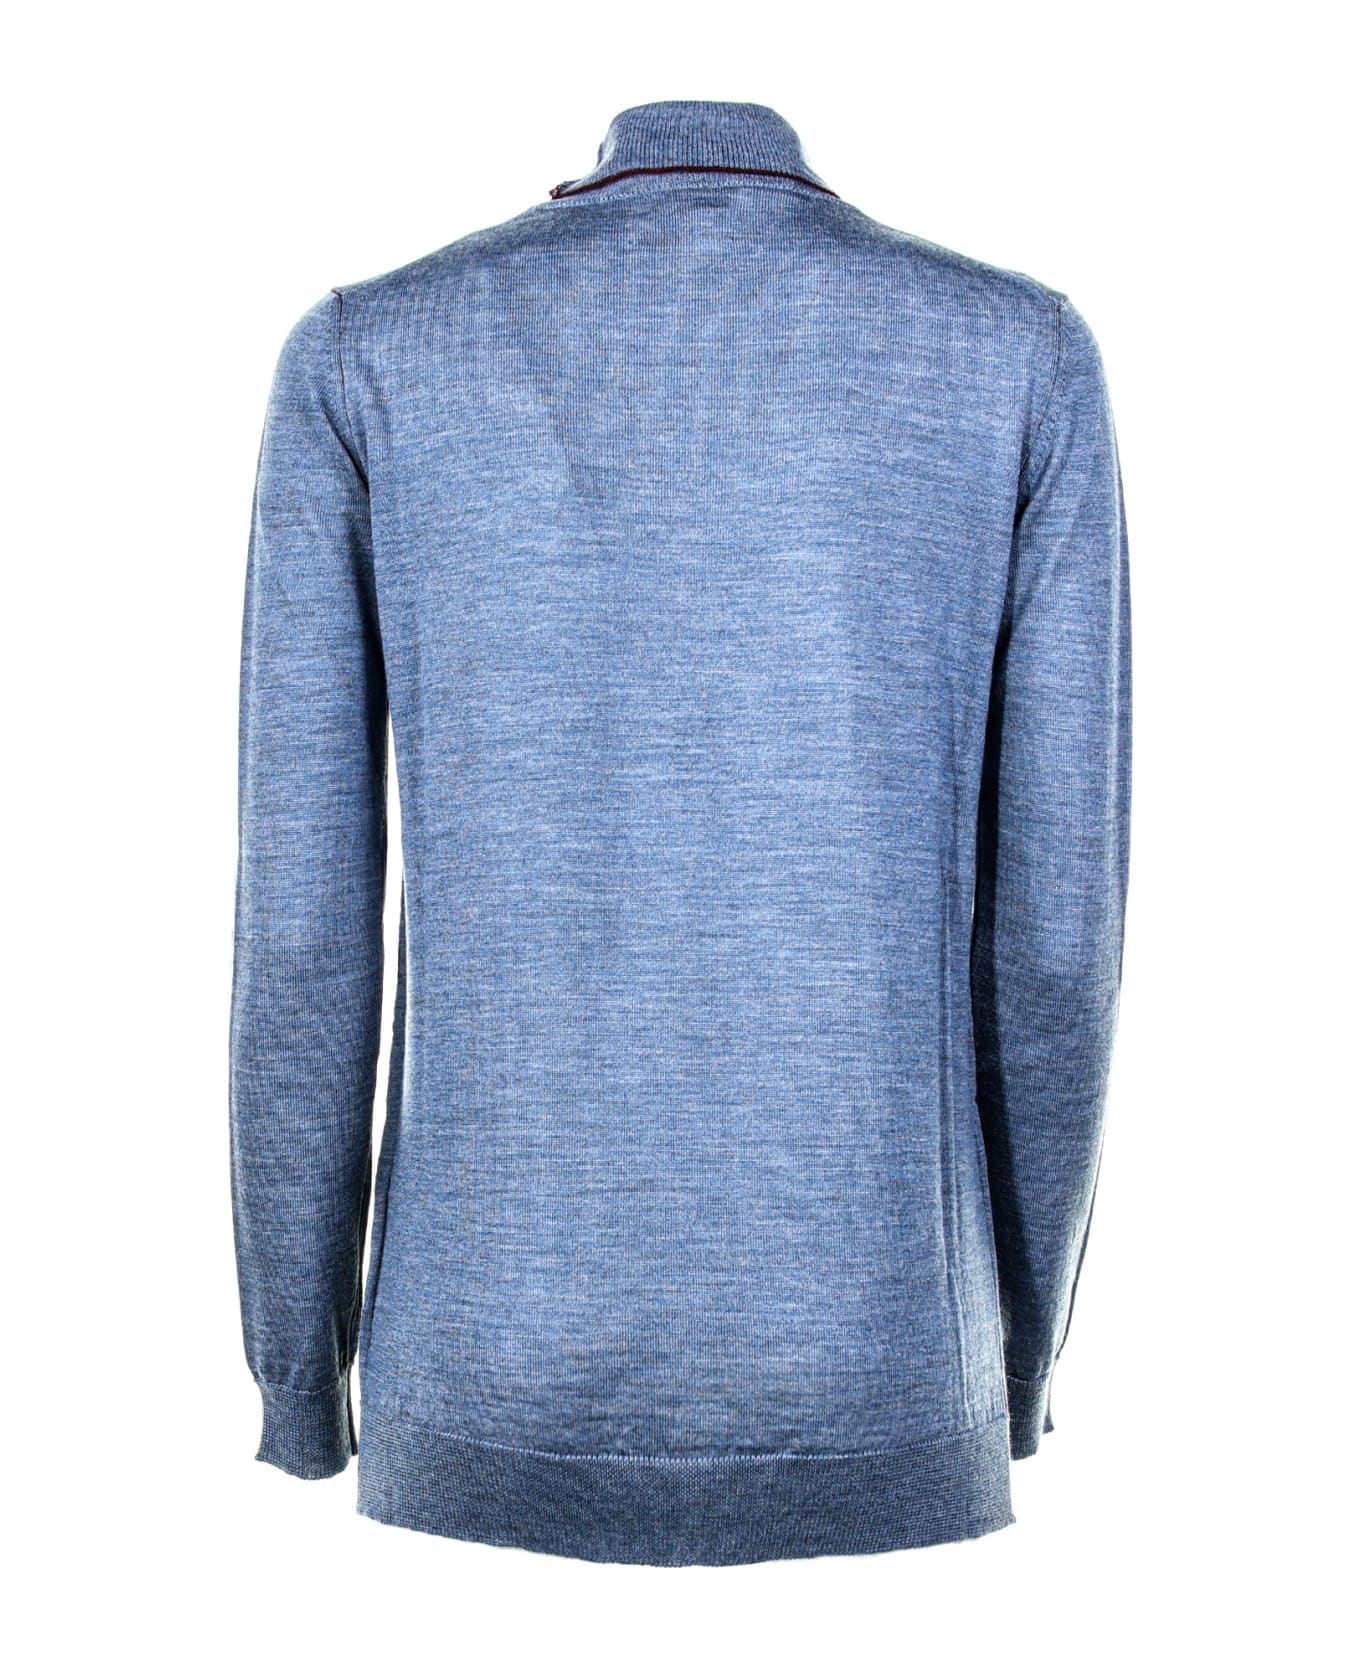 Woolrich Wool Turtleneck - Grey blue